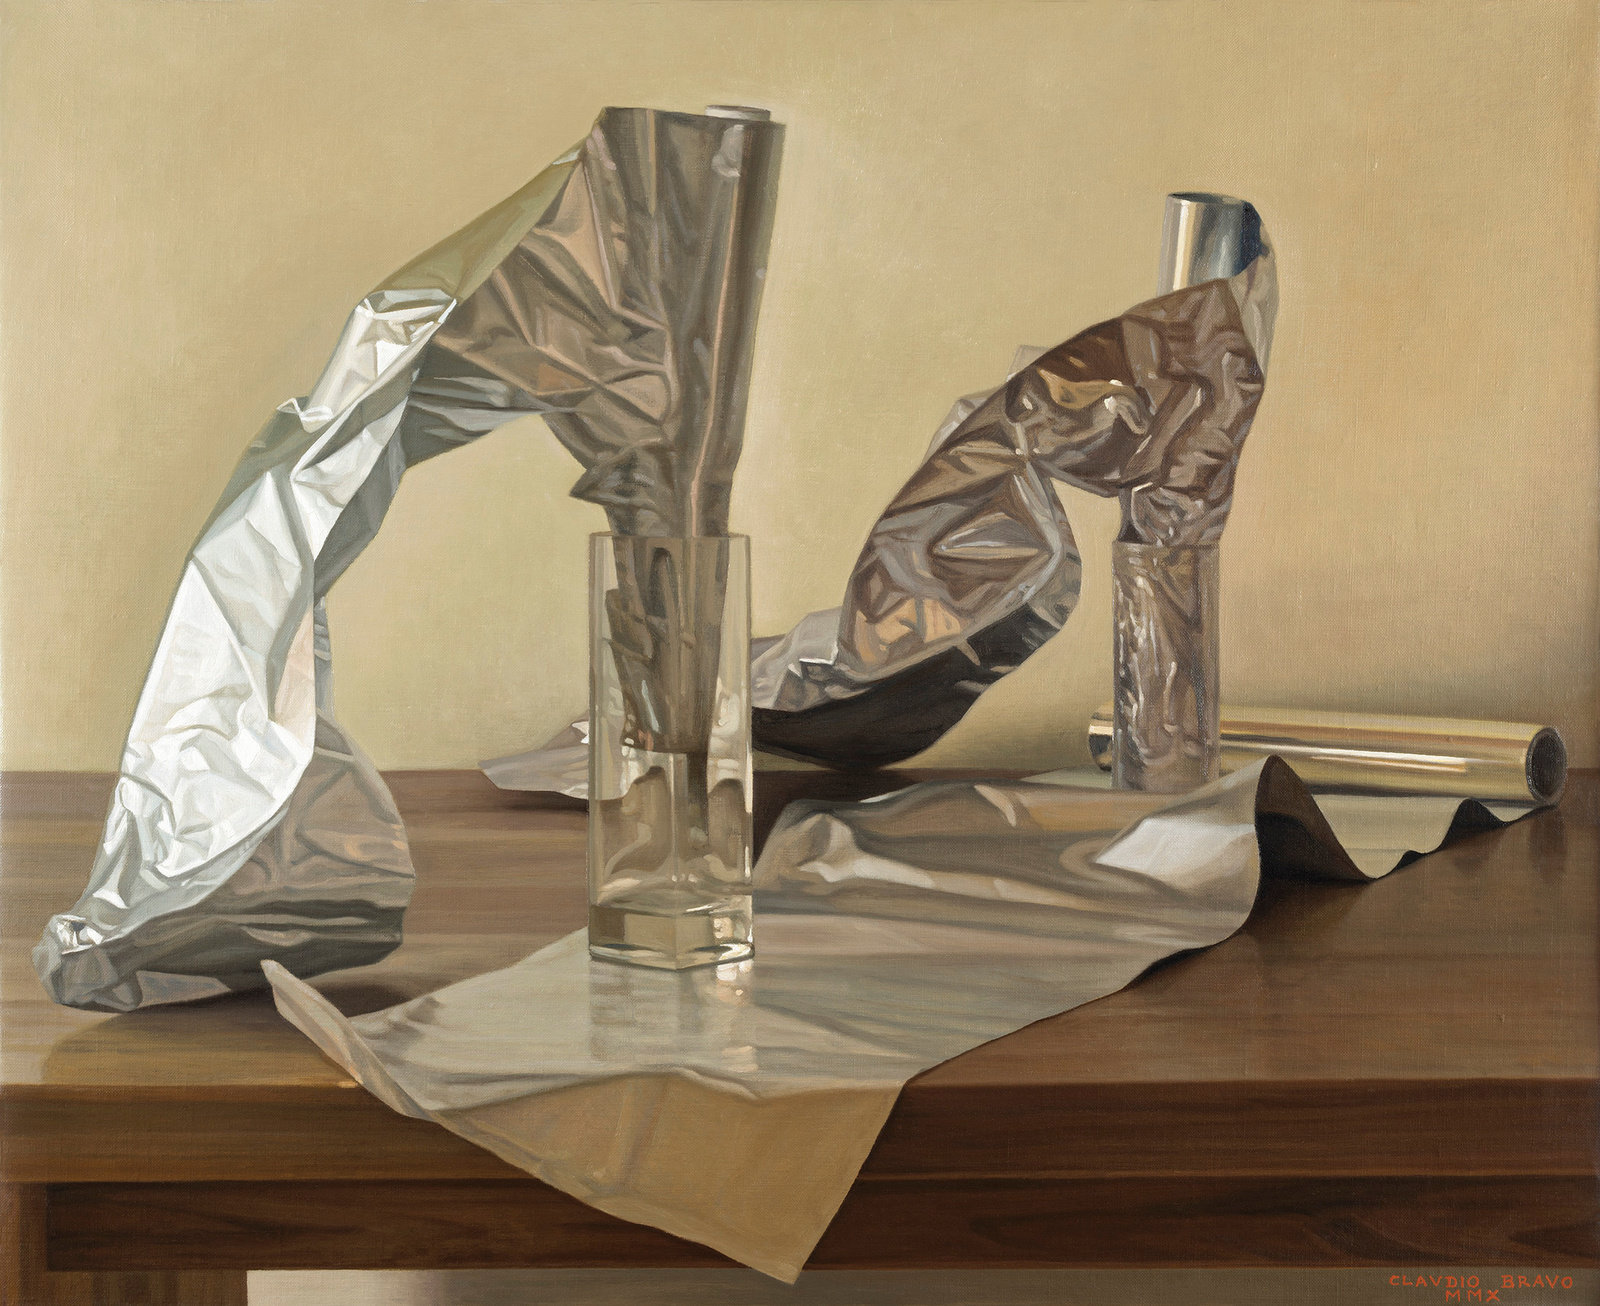 Bravo, aluminios   aluminums, 2010, oil on canvas, 25 5 8 x 31 5 8 in, non 50 887